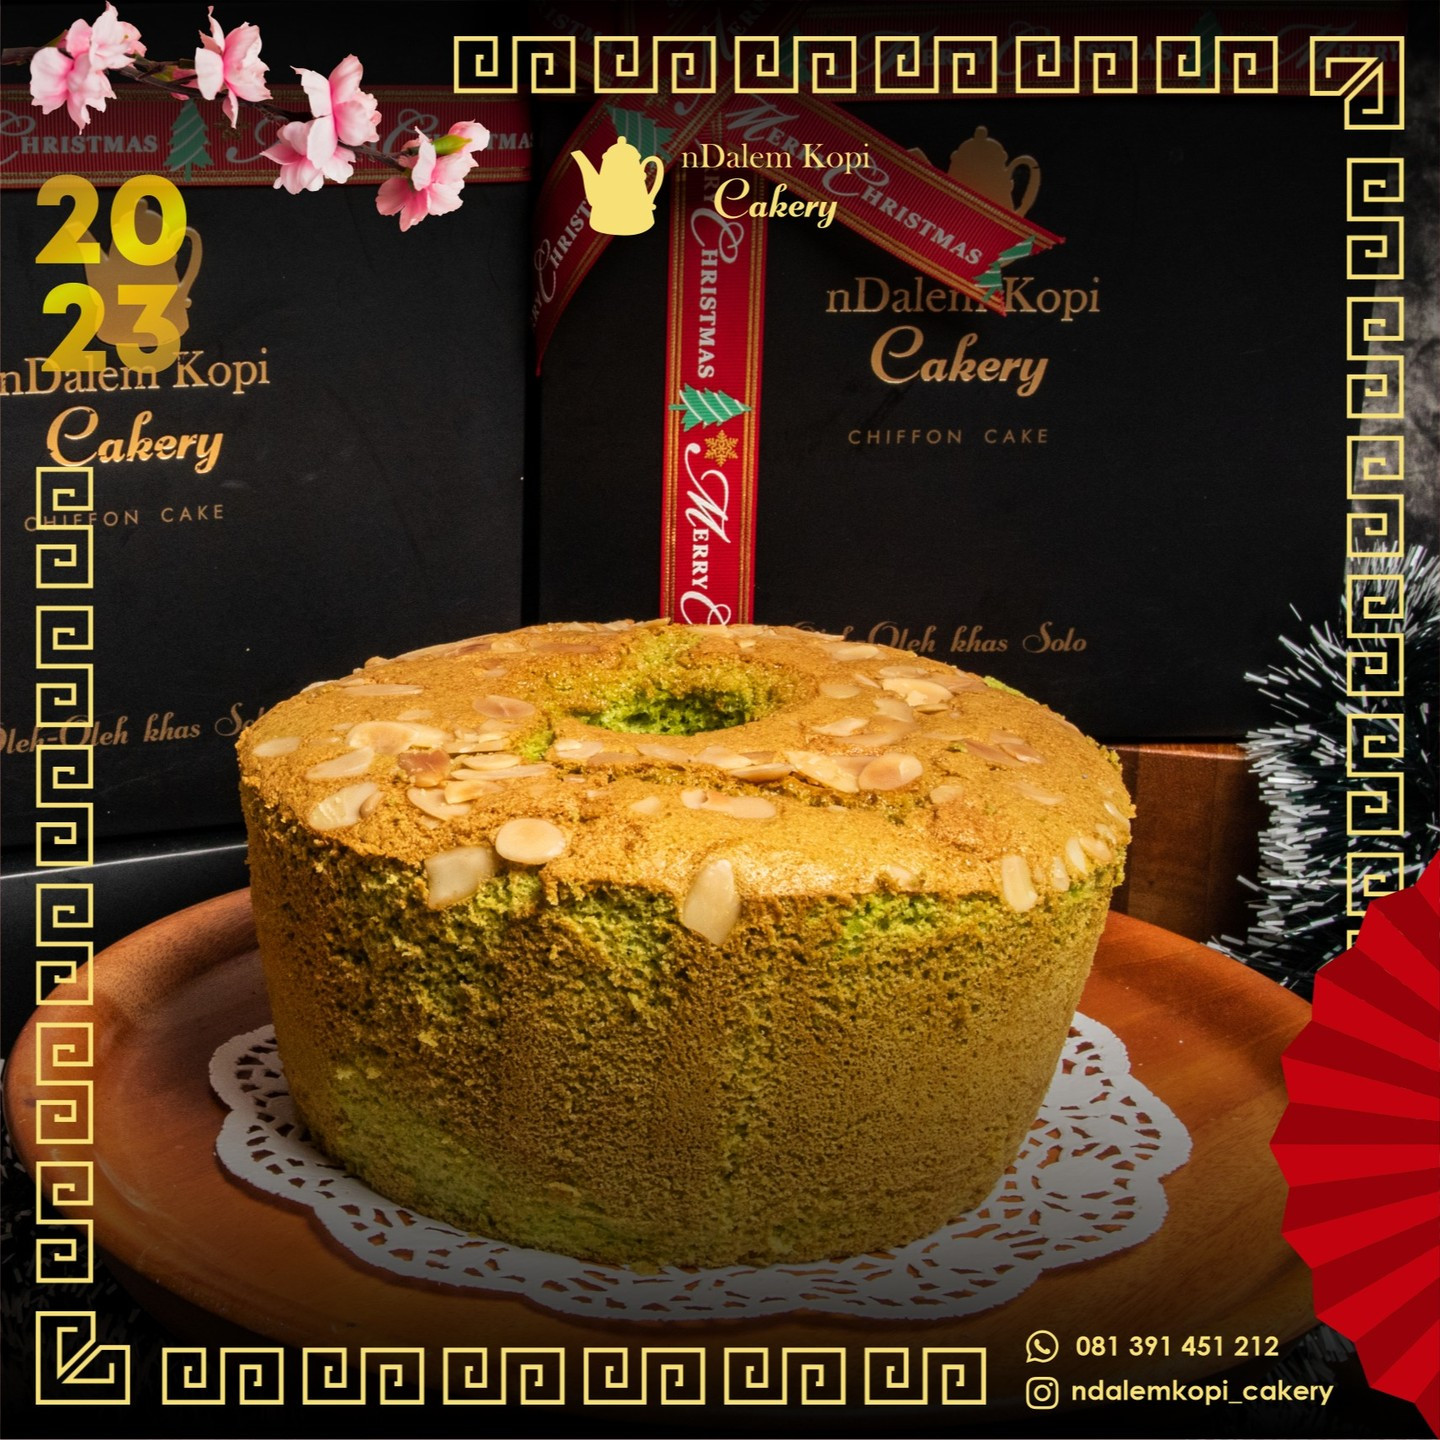 Chiffon Cake varian Pandan Almond